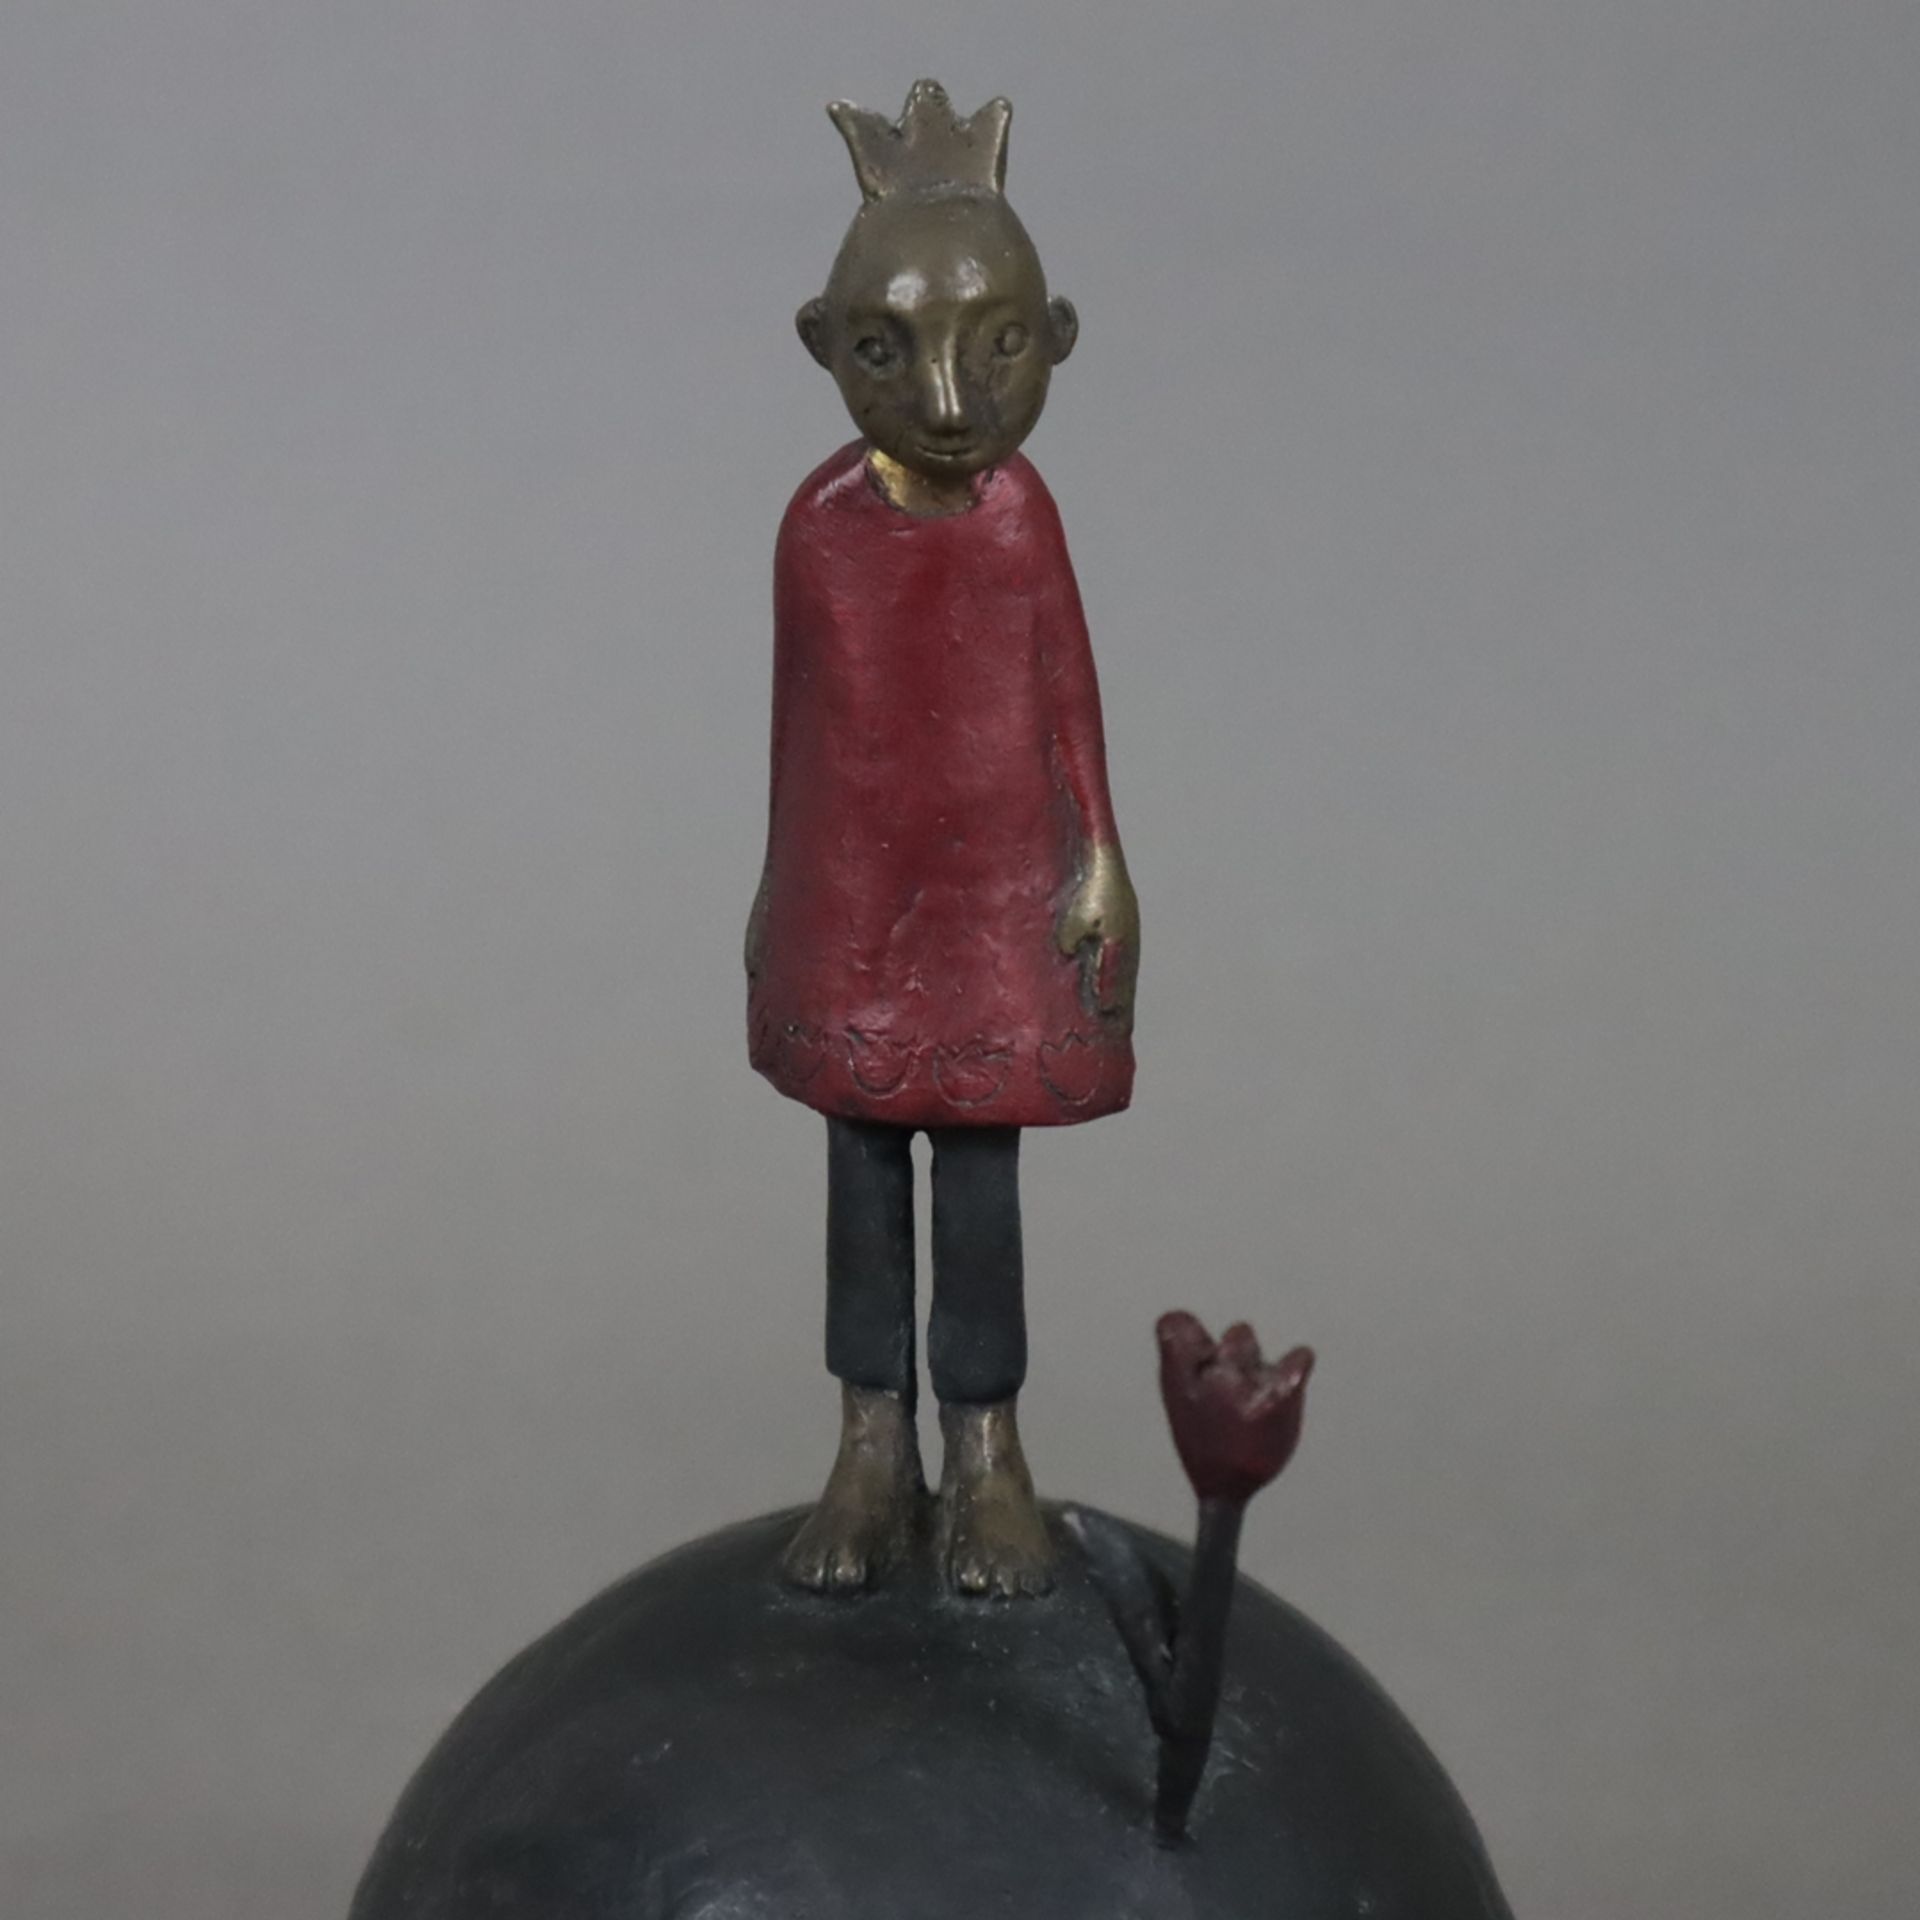 Suhr, Tamara (*1968) - Der kleine Prinz, Bronze, teils dunkel patiniert, partiell rot bemalt, monog - Image 2 of 7